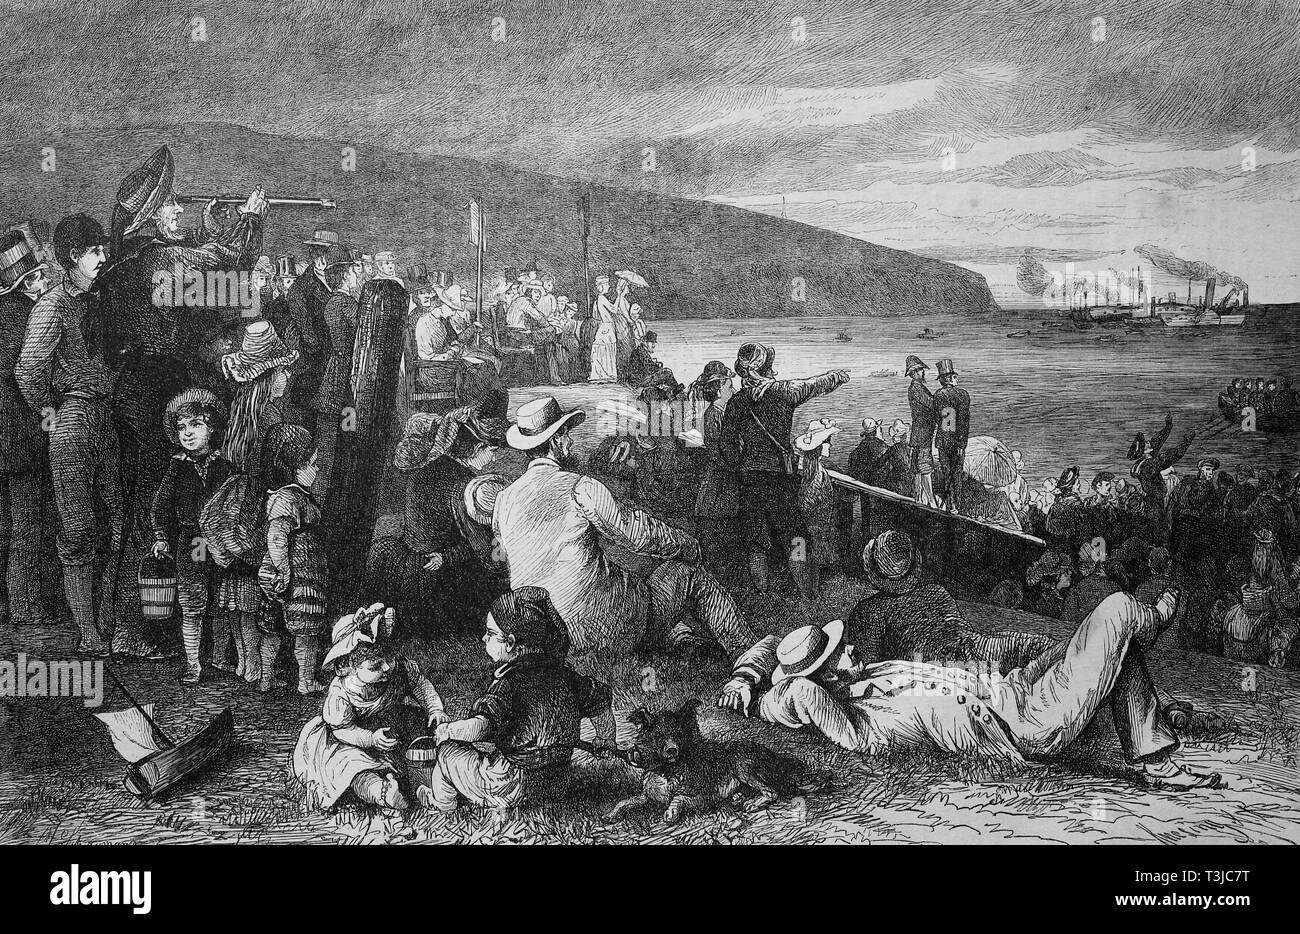 Am Strand der Insel Wight, England, historische Darstellung, 1880, England Stockfoto